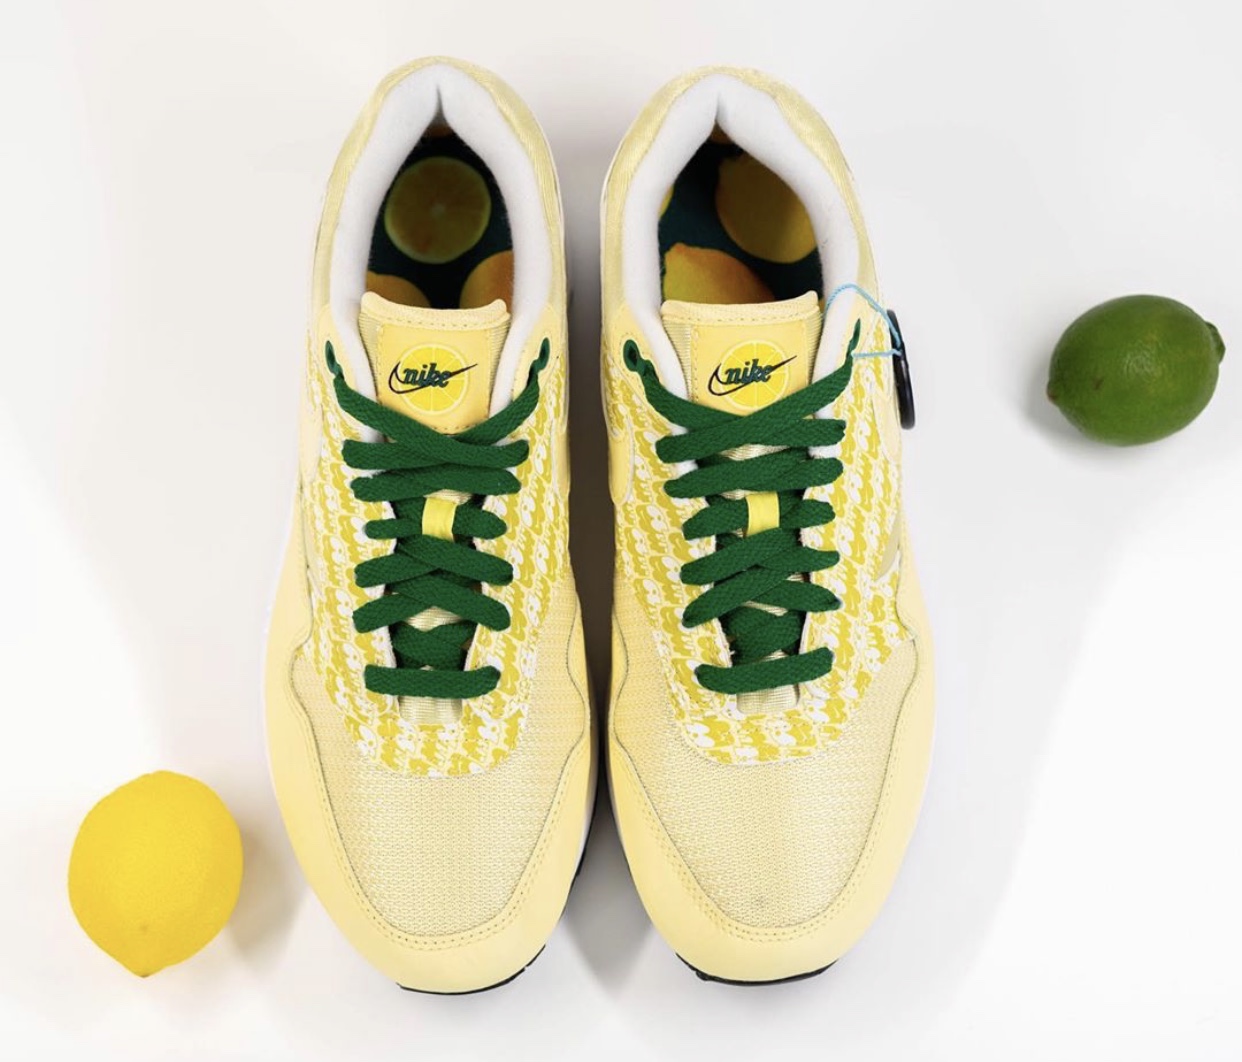 Pánské žluté tenisky Nike Air Max 1 Lemonade/Lemonade-Pine Green-True White CJ0609-700 nízké sportovní boty a obuv Nike